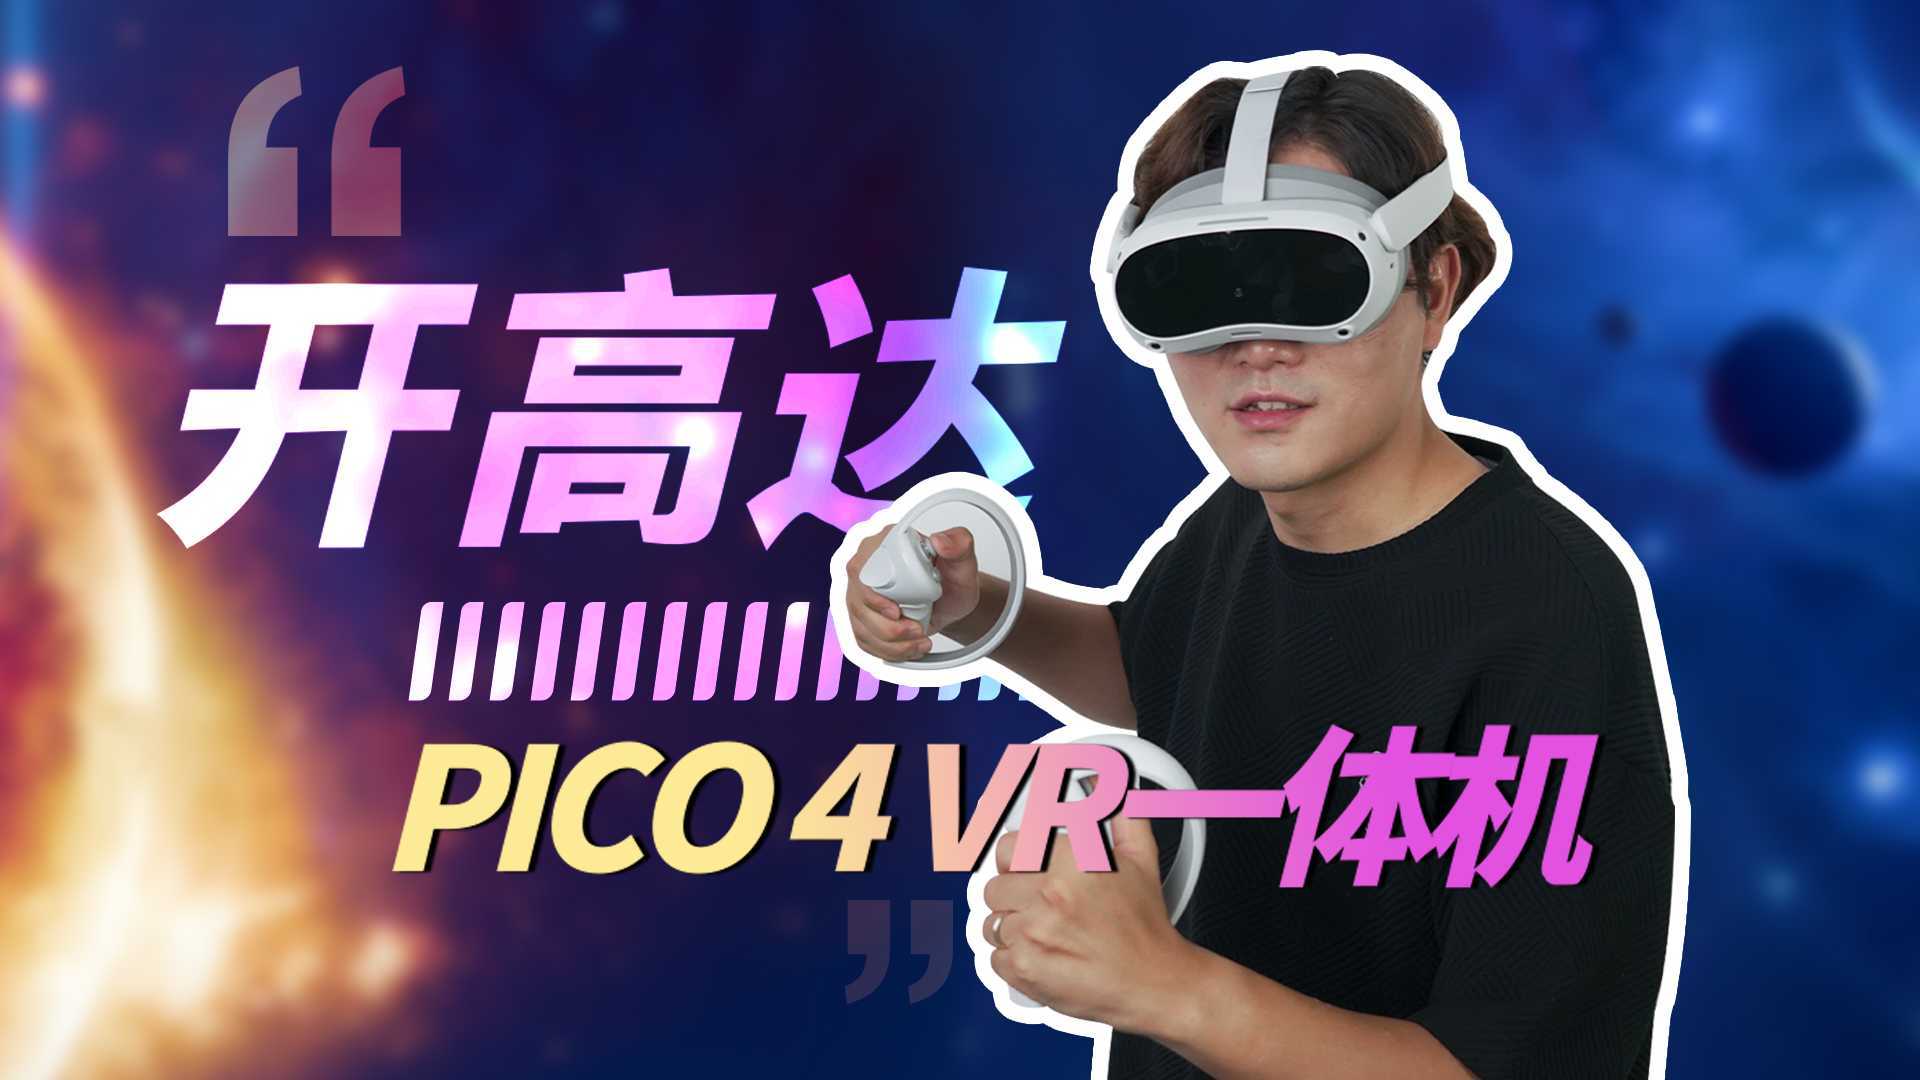 头号玩家成为现实？PICO 4 VR一体机抢先测评